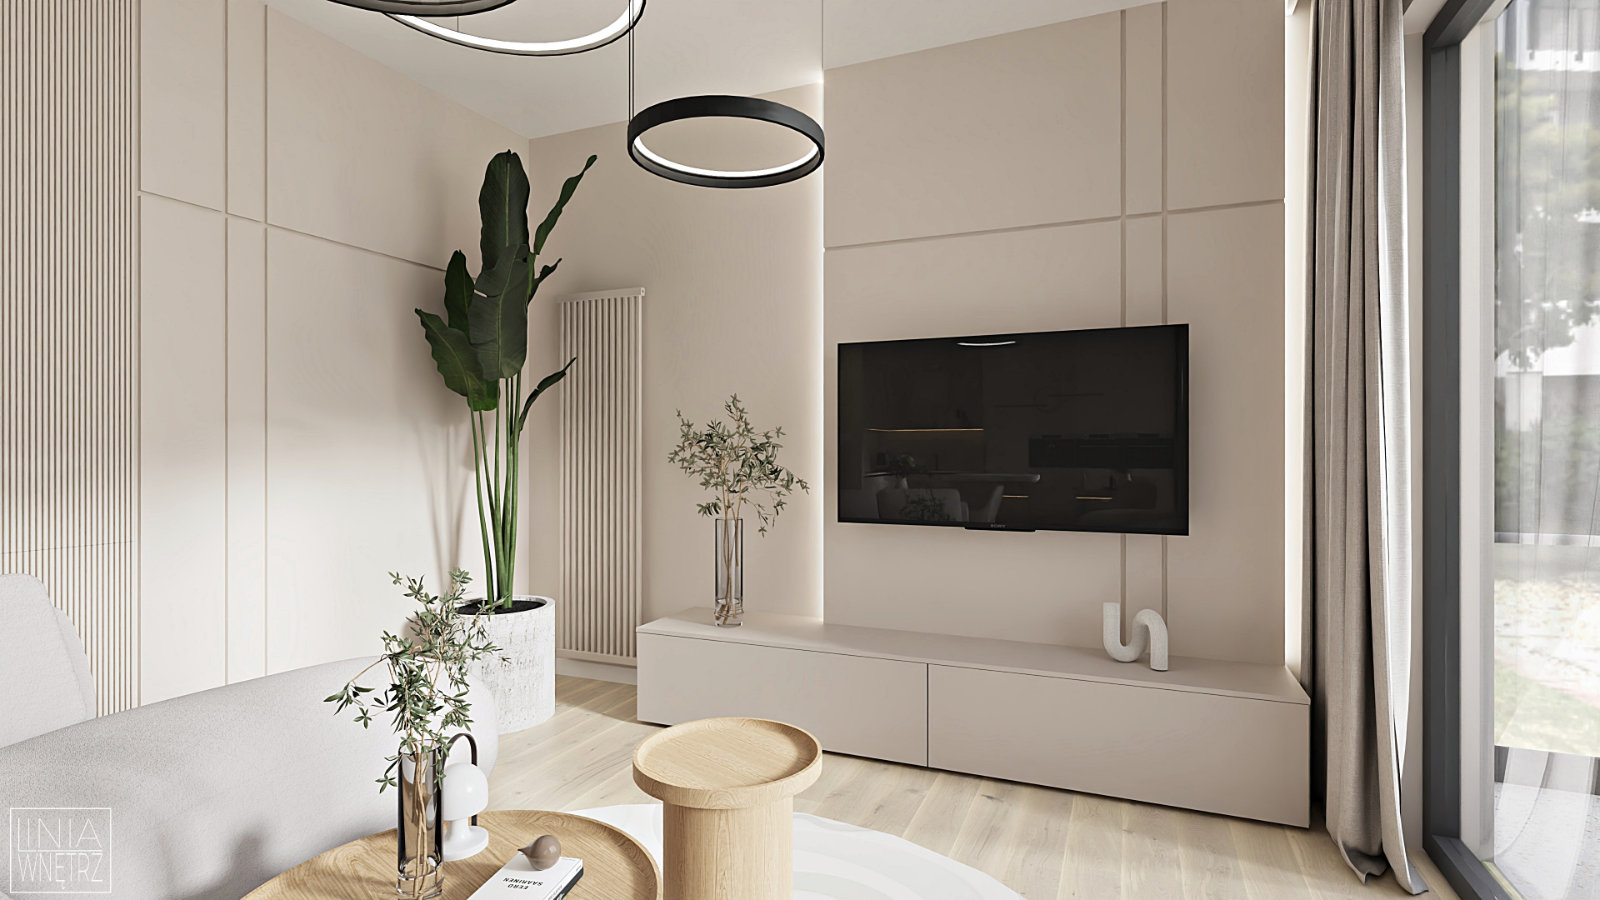 salon-elegancki-nowoczesny-minimalistyczny-jasne-sciany-drewno-biel-projekt-linia-wnetrz